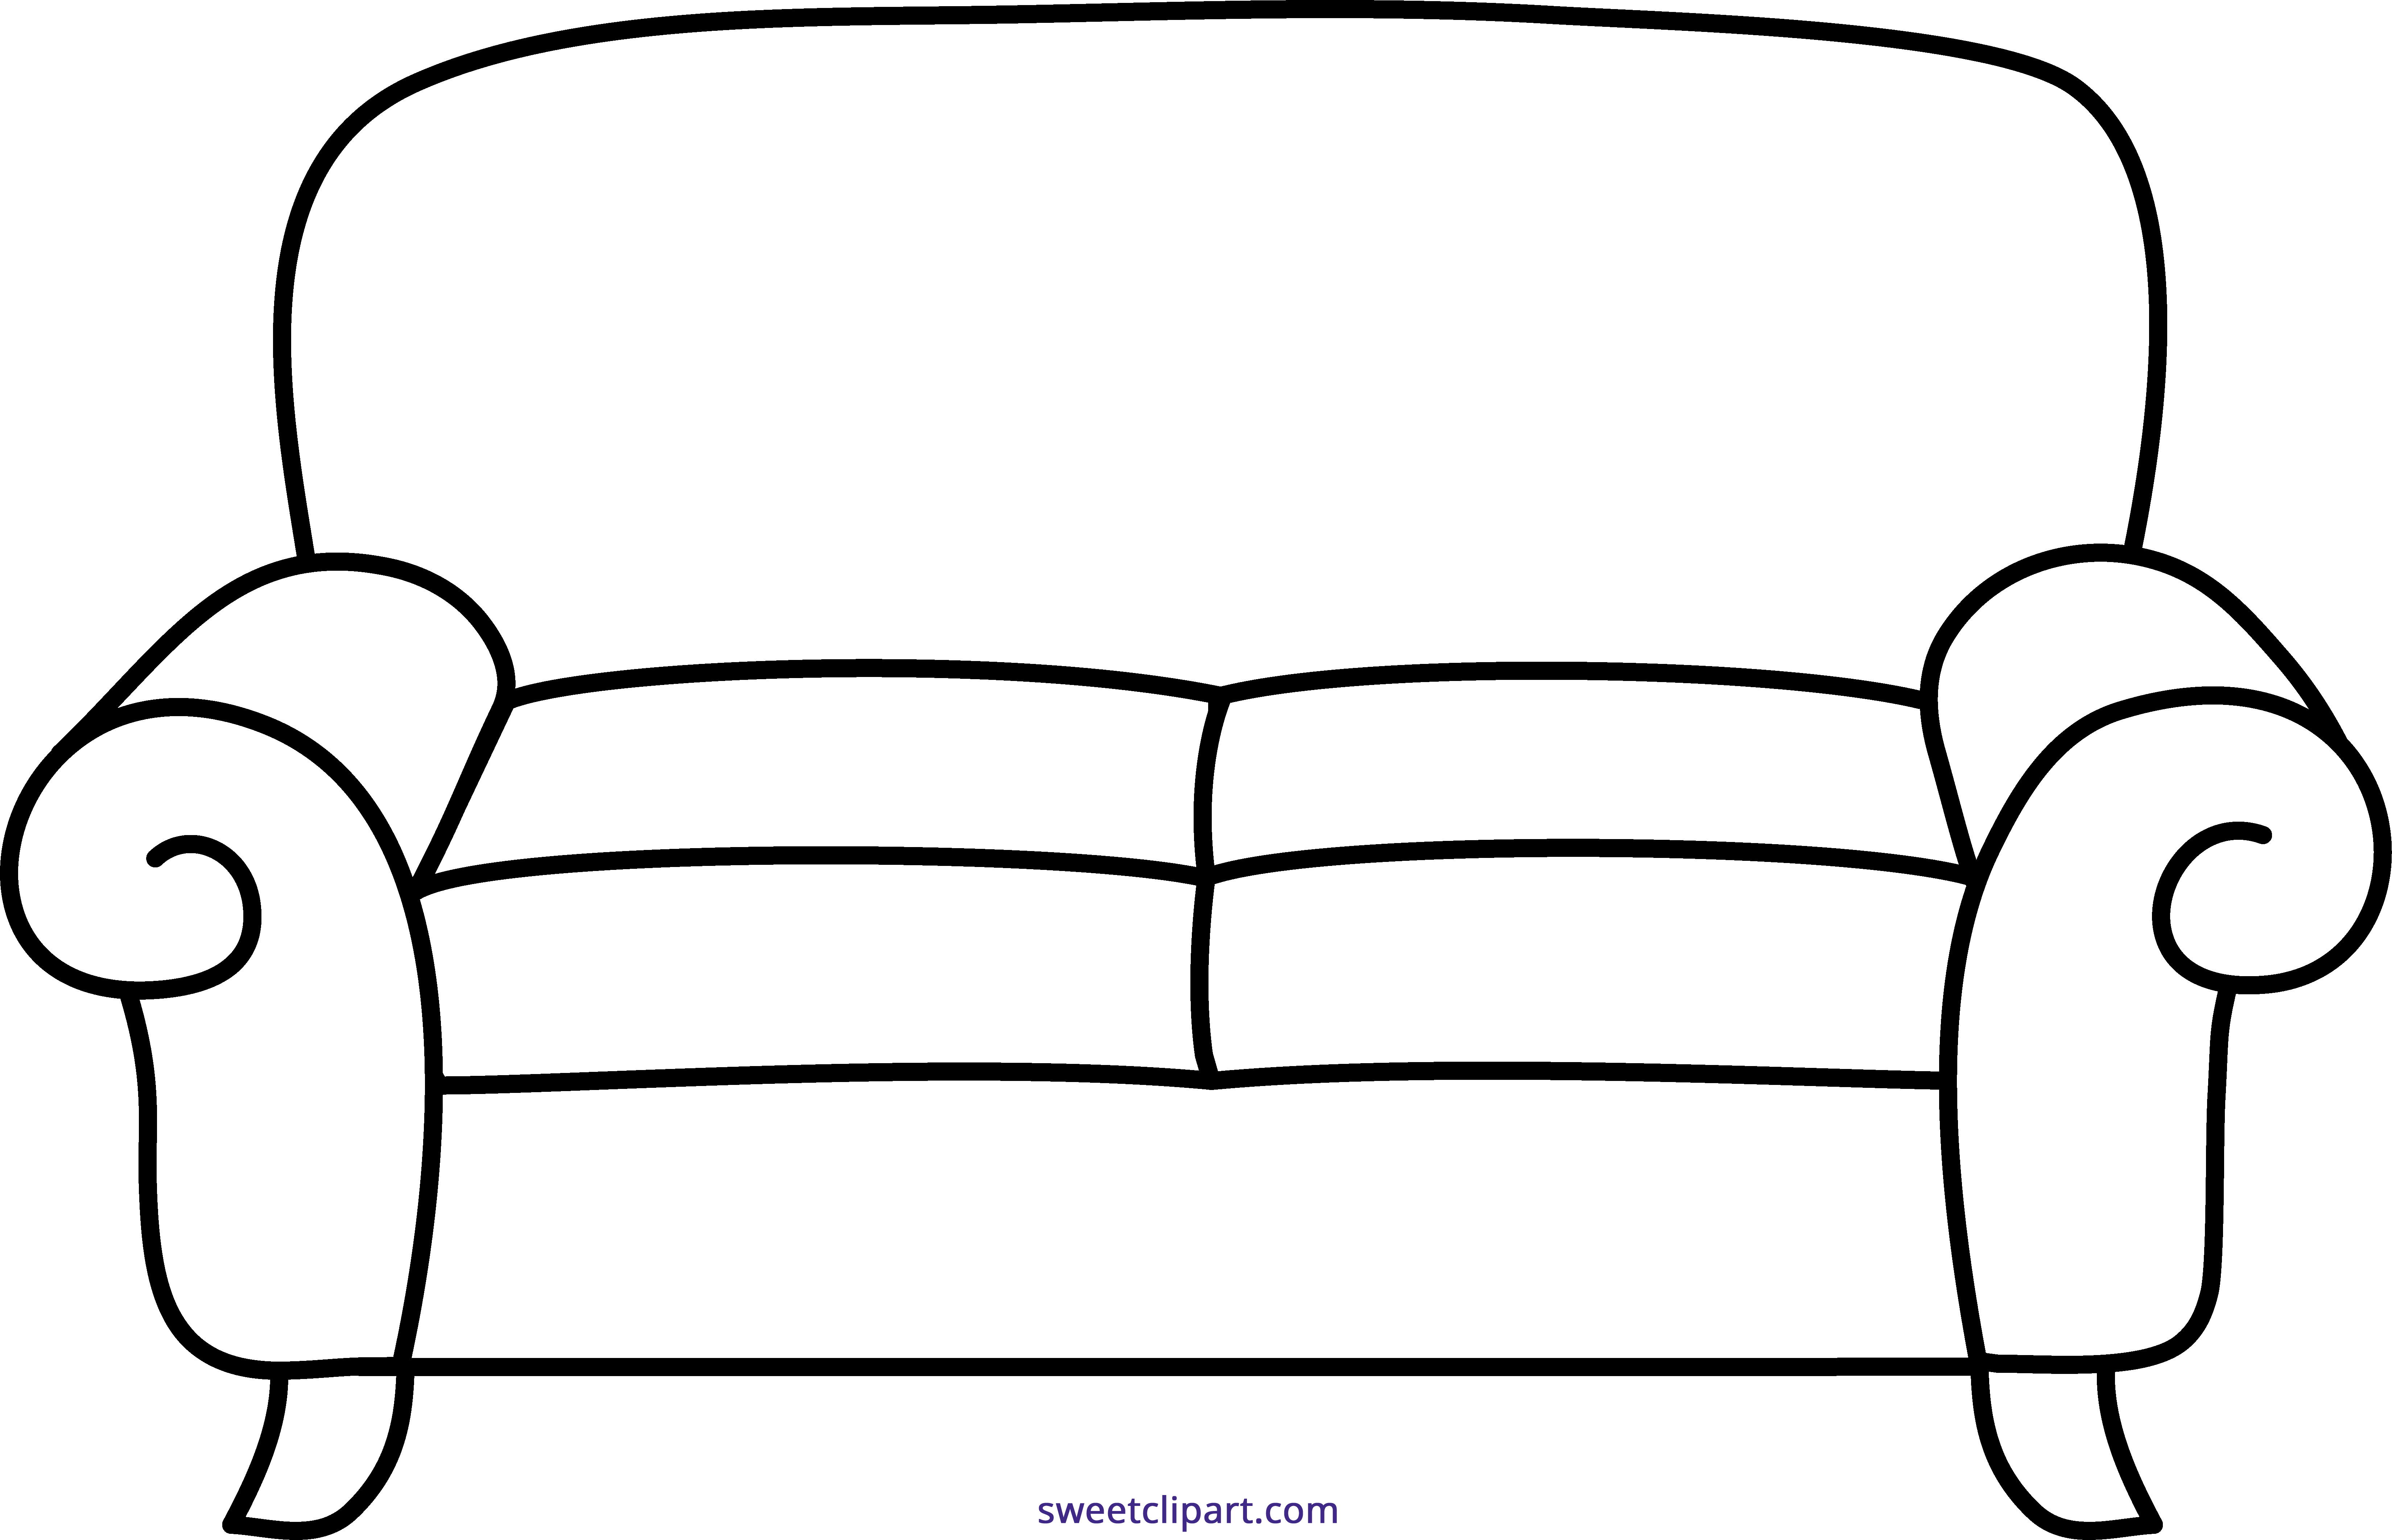 Sofa pictures. Раскраска "мебель". Раскраска диван. Диван раскраска для детей. Раскраска мебель для малышей.